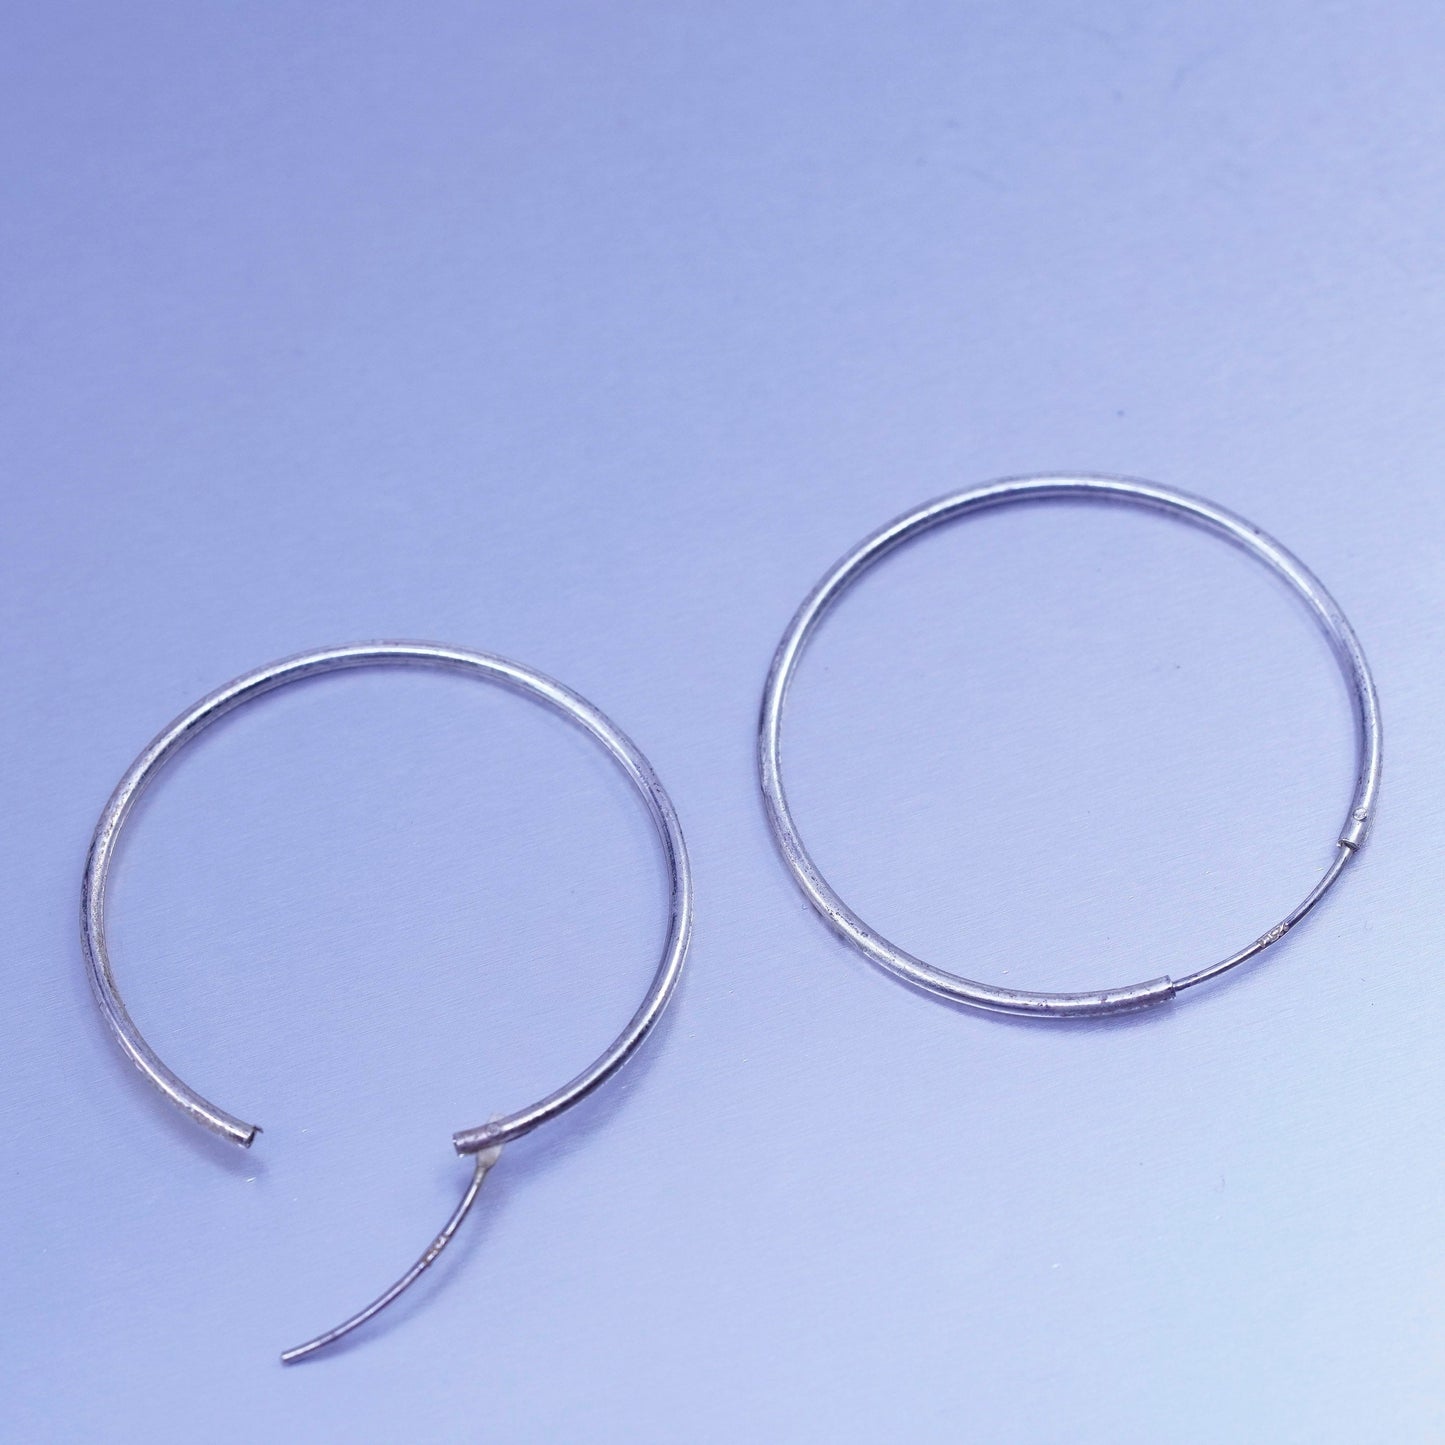 1.25”, vintage Sterling silver handmade earrings, 925 simple oval hoops